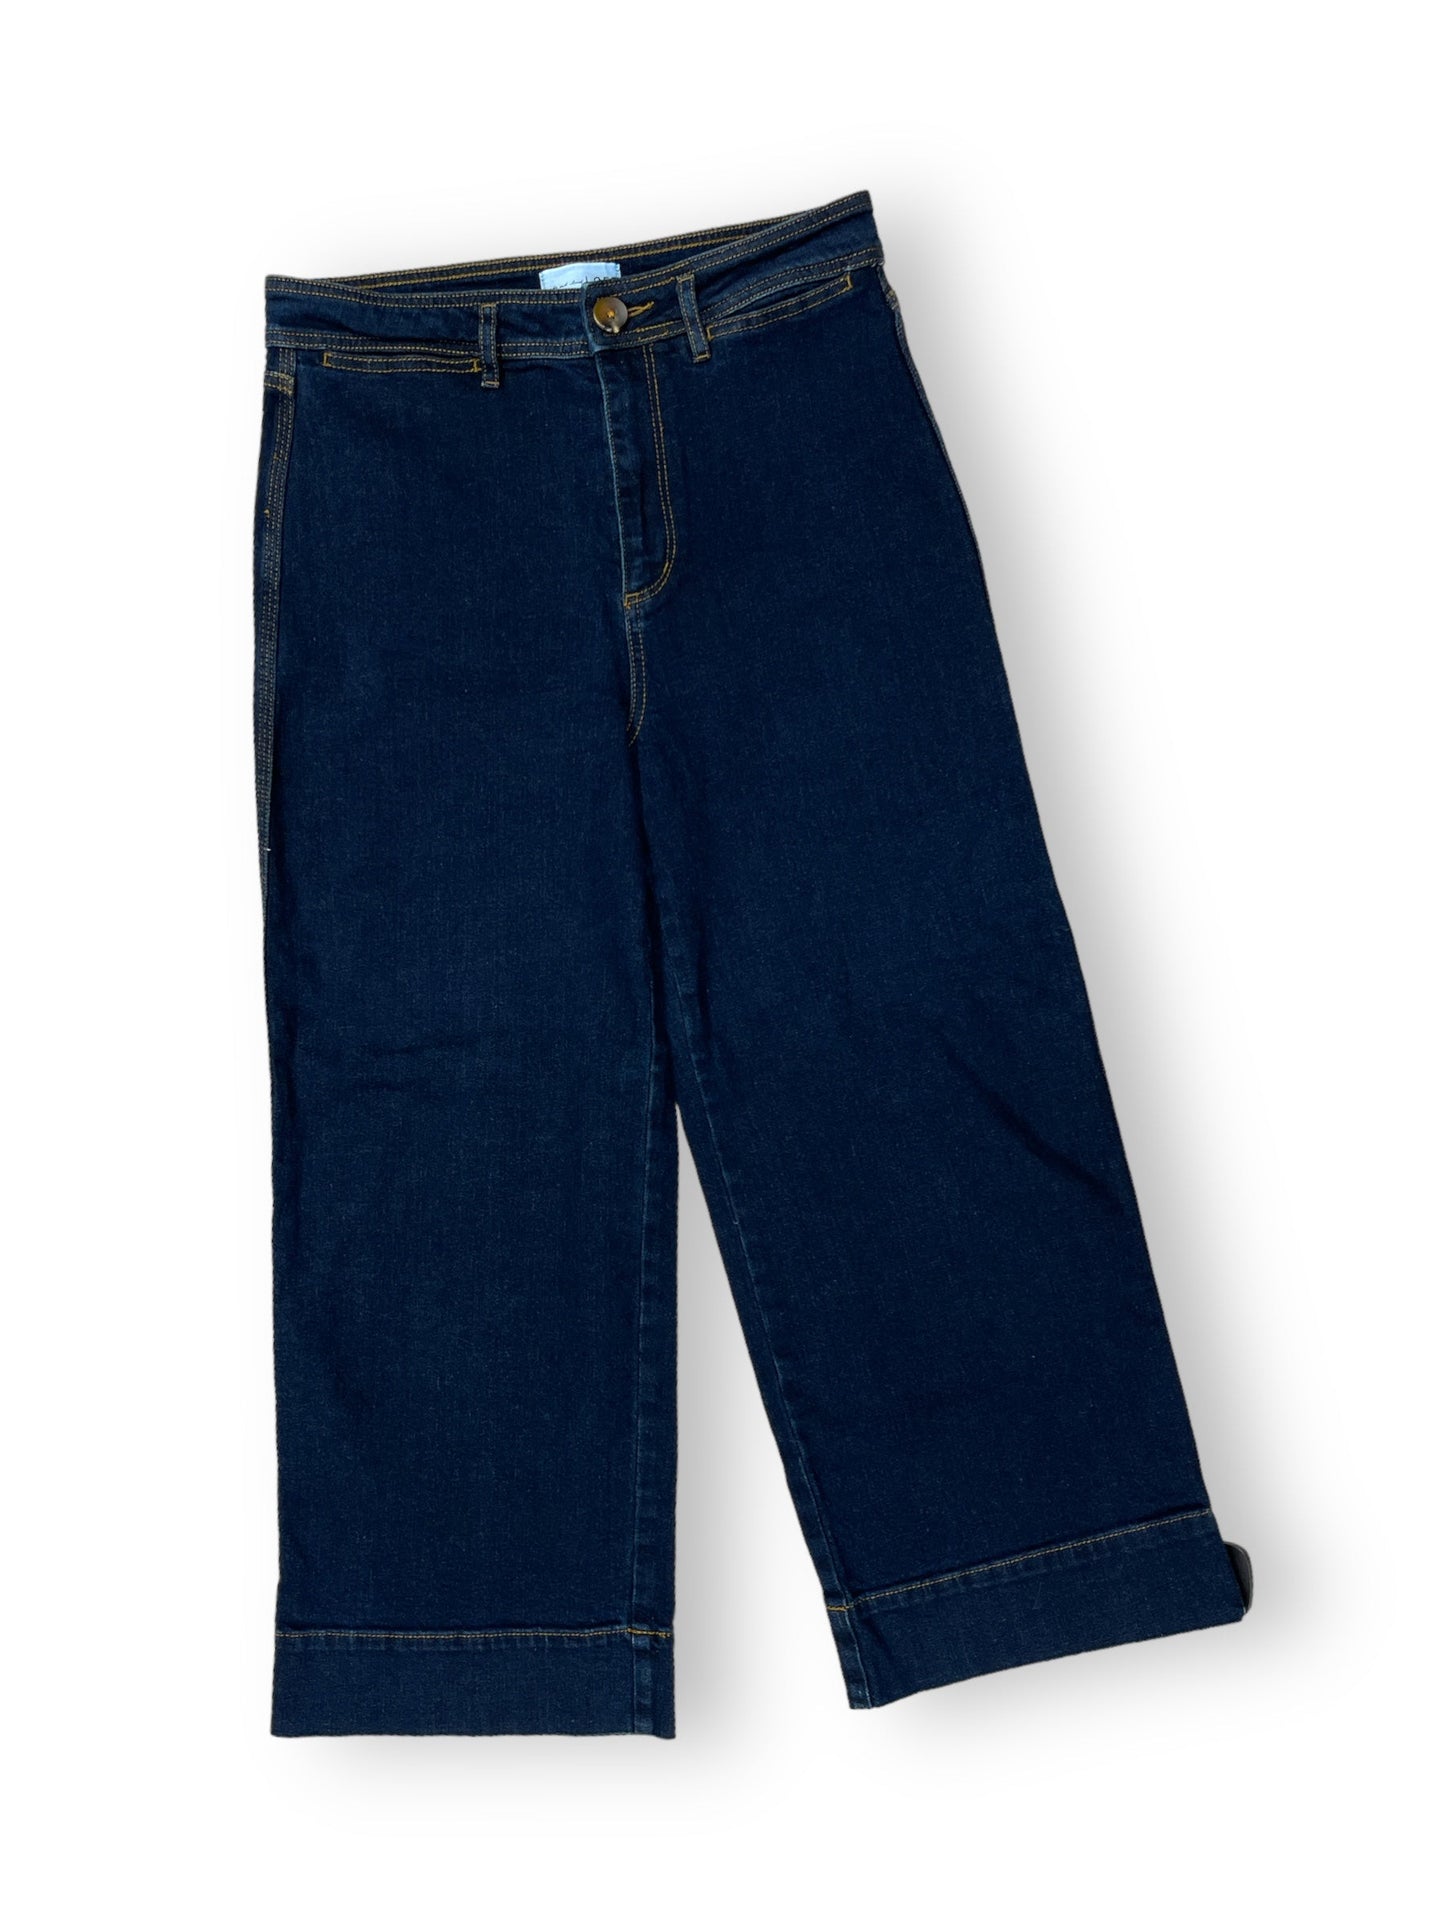 Jeans Wide Leg By Loft  Size: 4